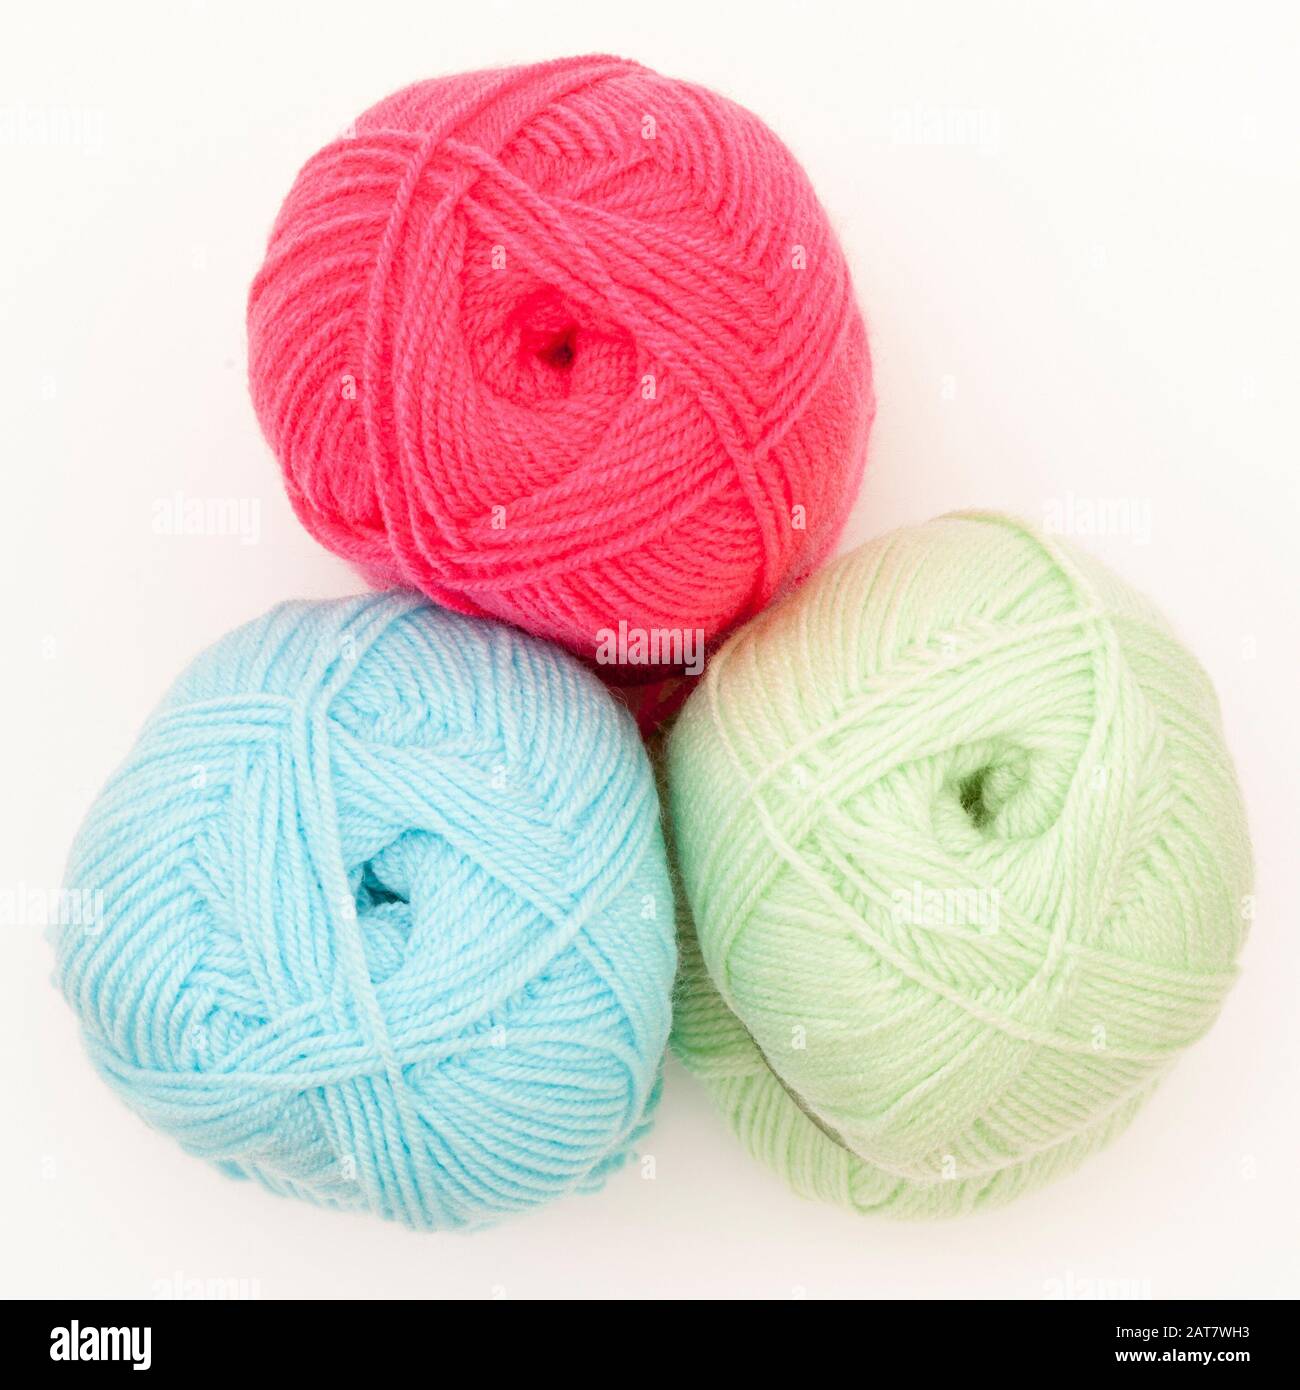 Trois balles de laine colorée sur fond blanc Banque D'Images